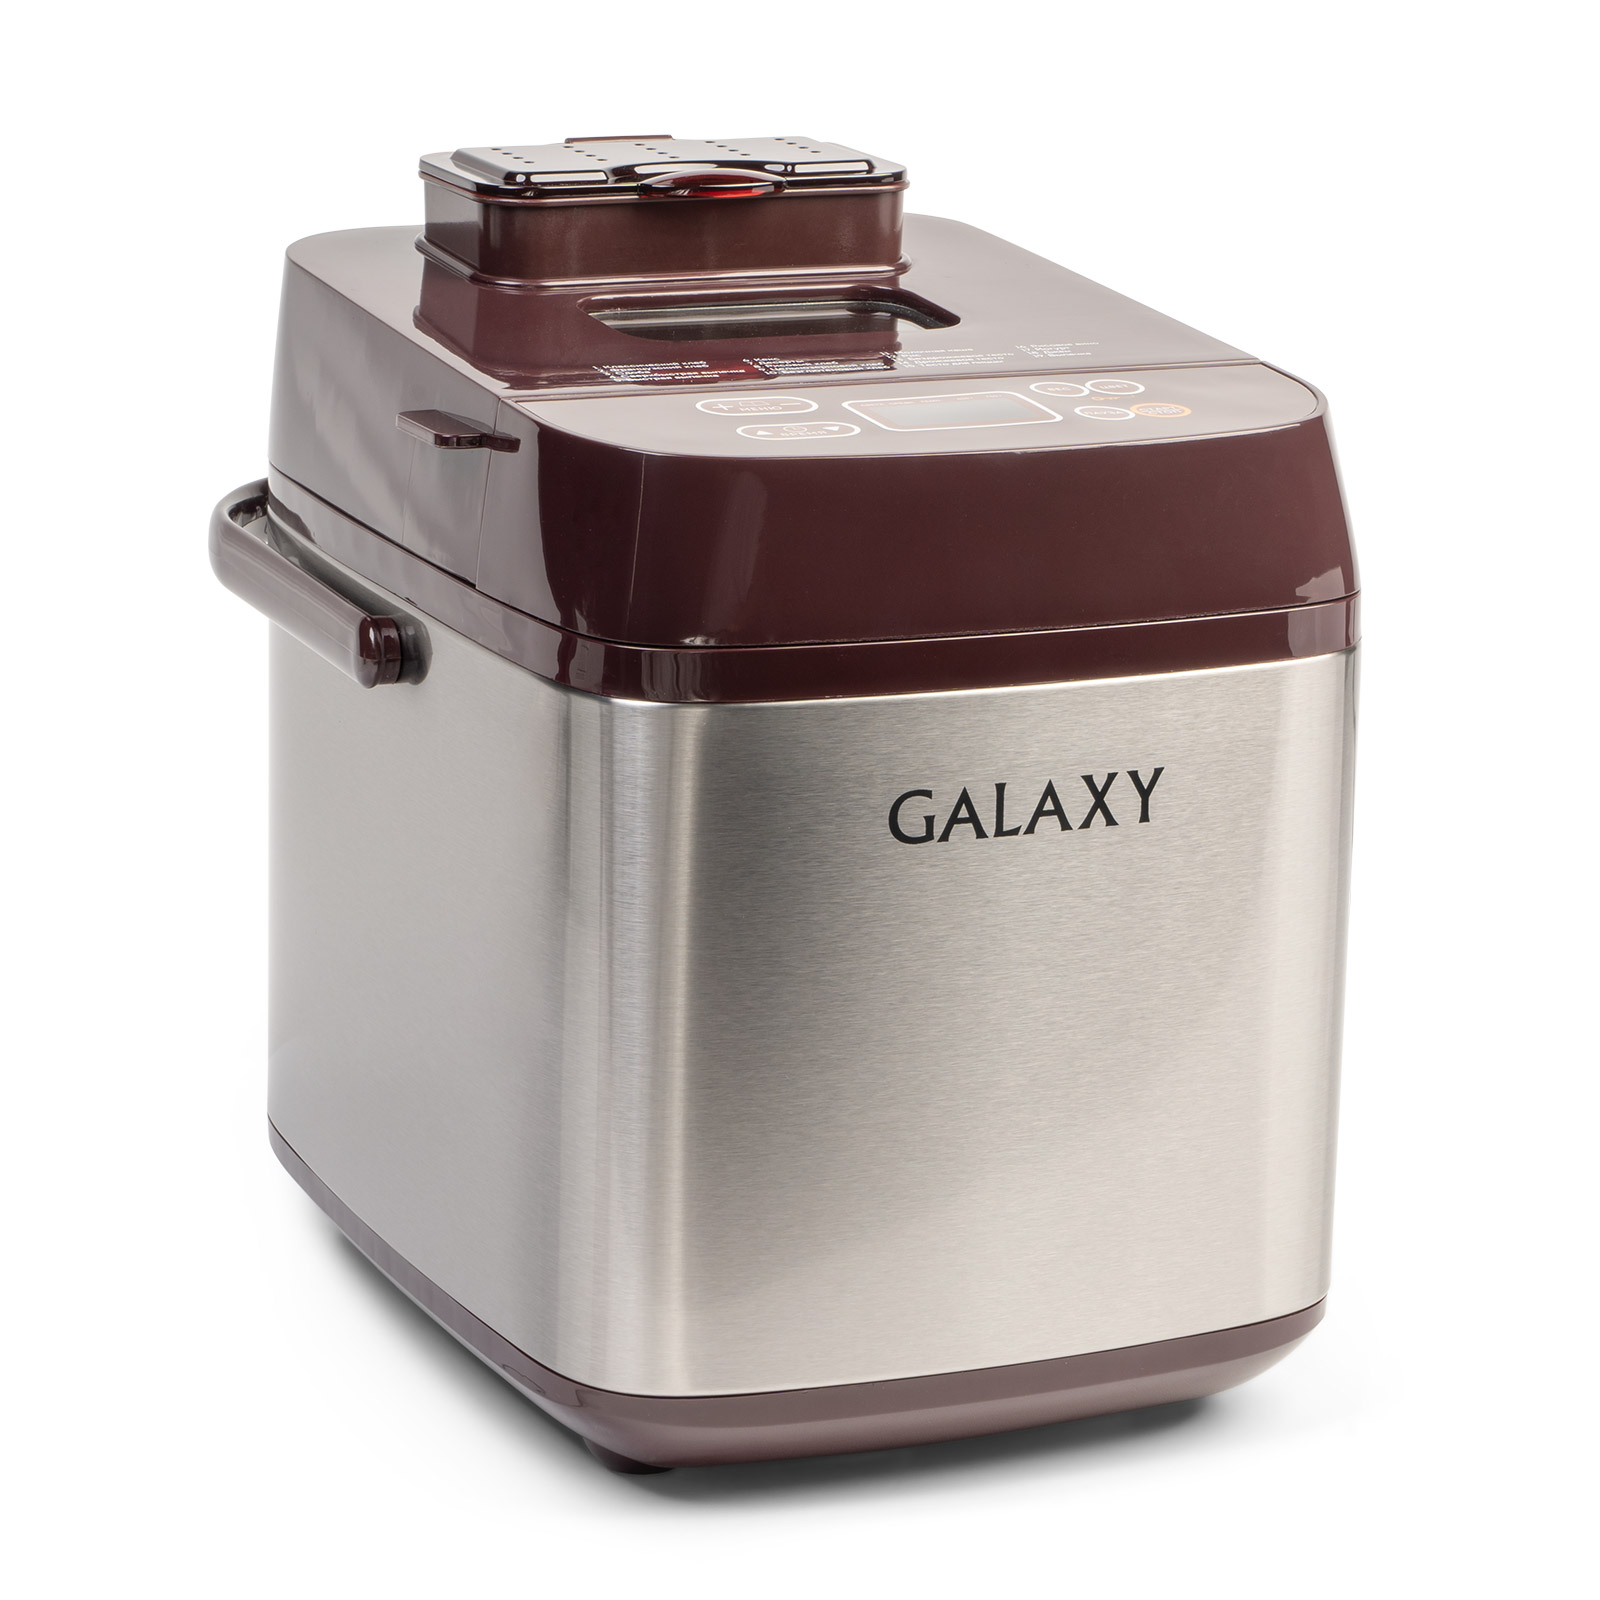 Хлебопечь GALAXY GL2700 600Вт, бордовый/серебристый (гл2700), цвет бордовый/серебристый